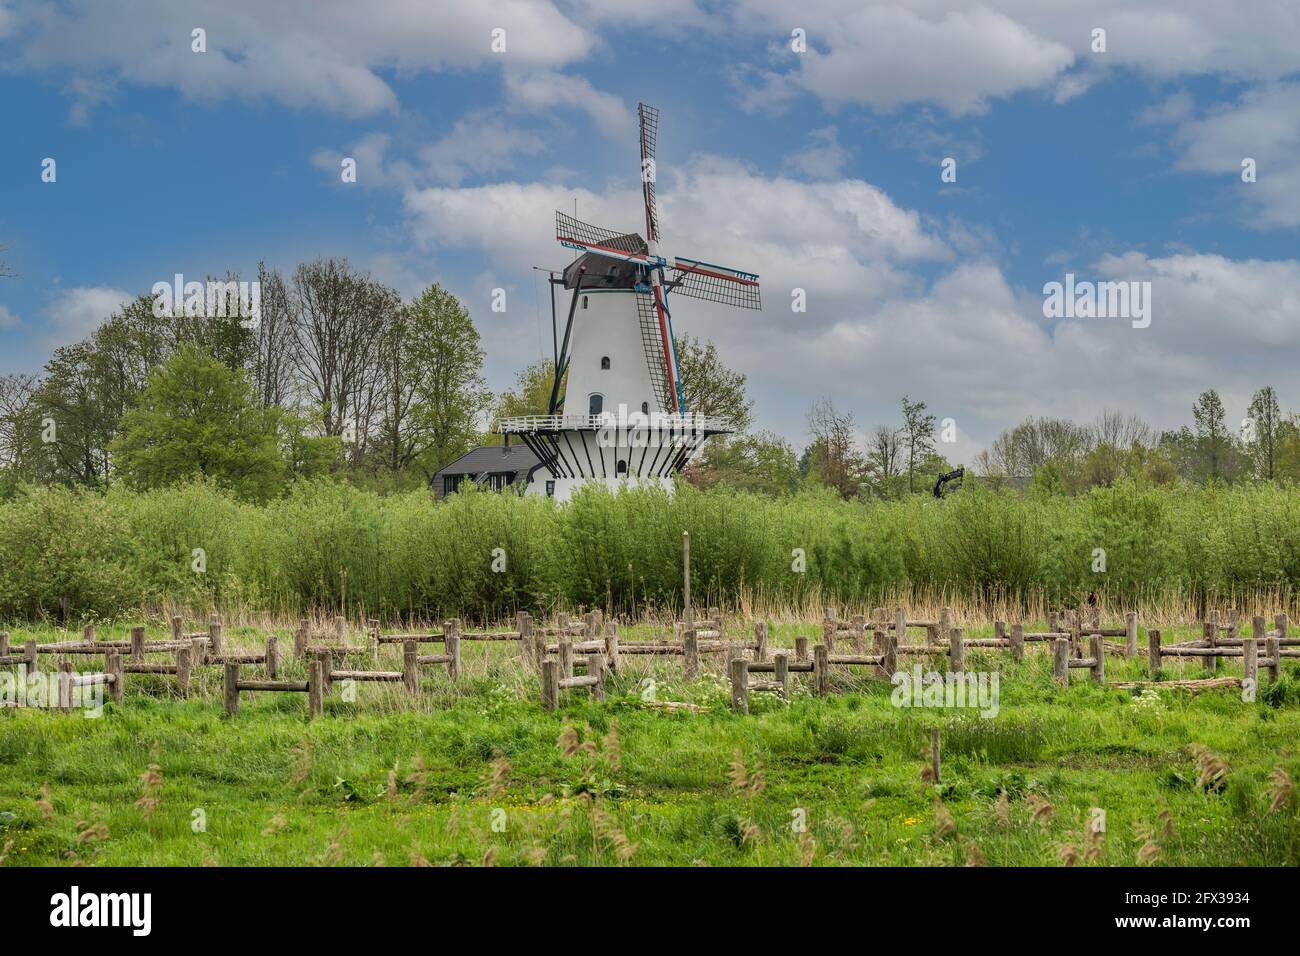 Mill de Vlinder, Appeldijk 4, Deil, Province of Gelderland, Netherlands, May 11, 2021: De Vlinder windmill built in 1913 along the river Linge near th Stock Photo